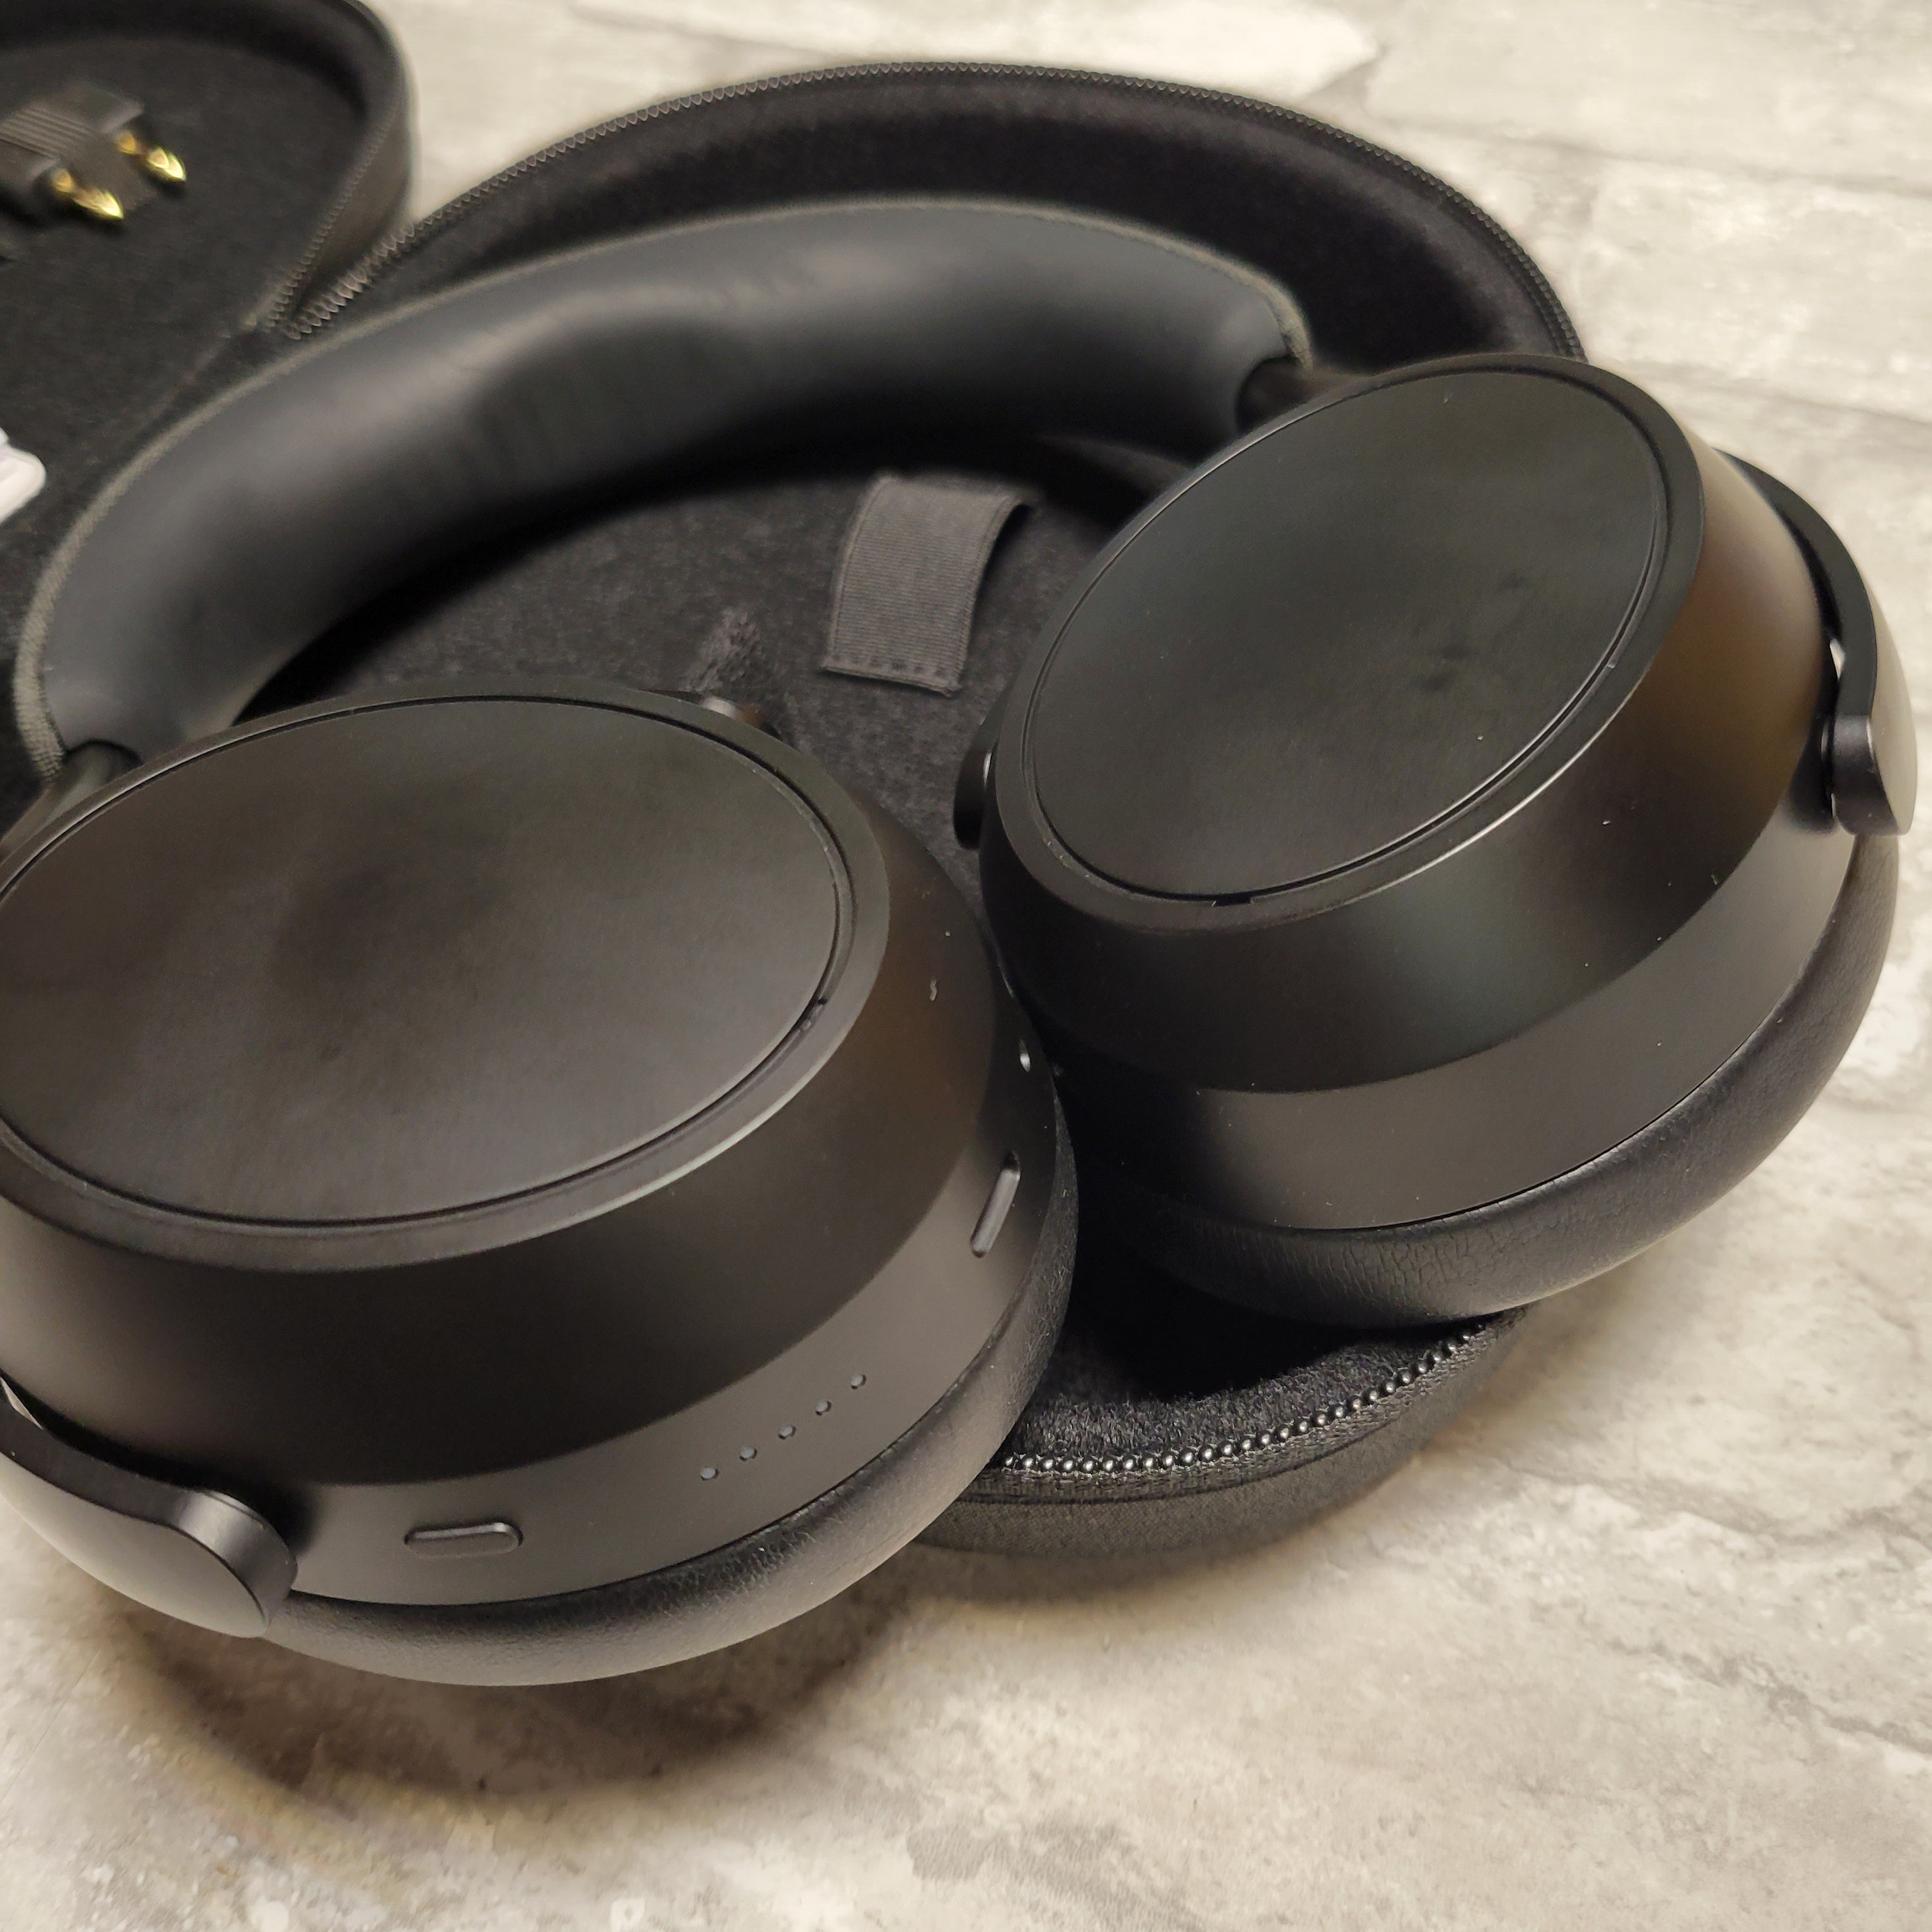 Sennheiser Momentum 4 Over The Ear Wireless Headphones - Black (8039857324270)